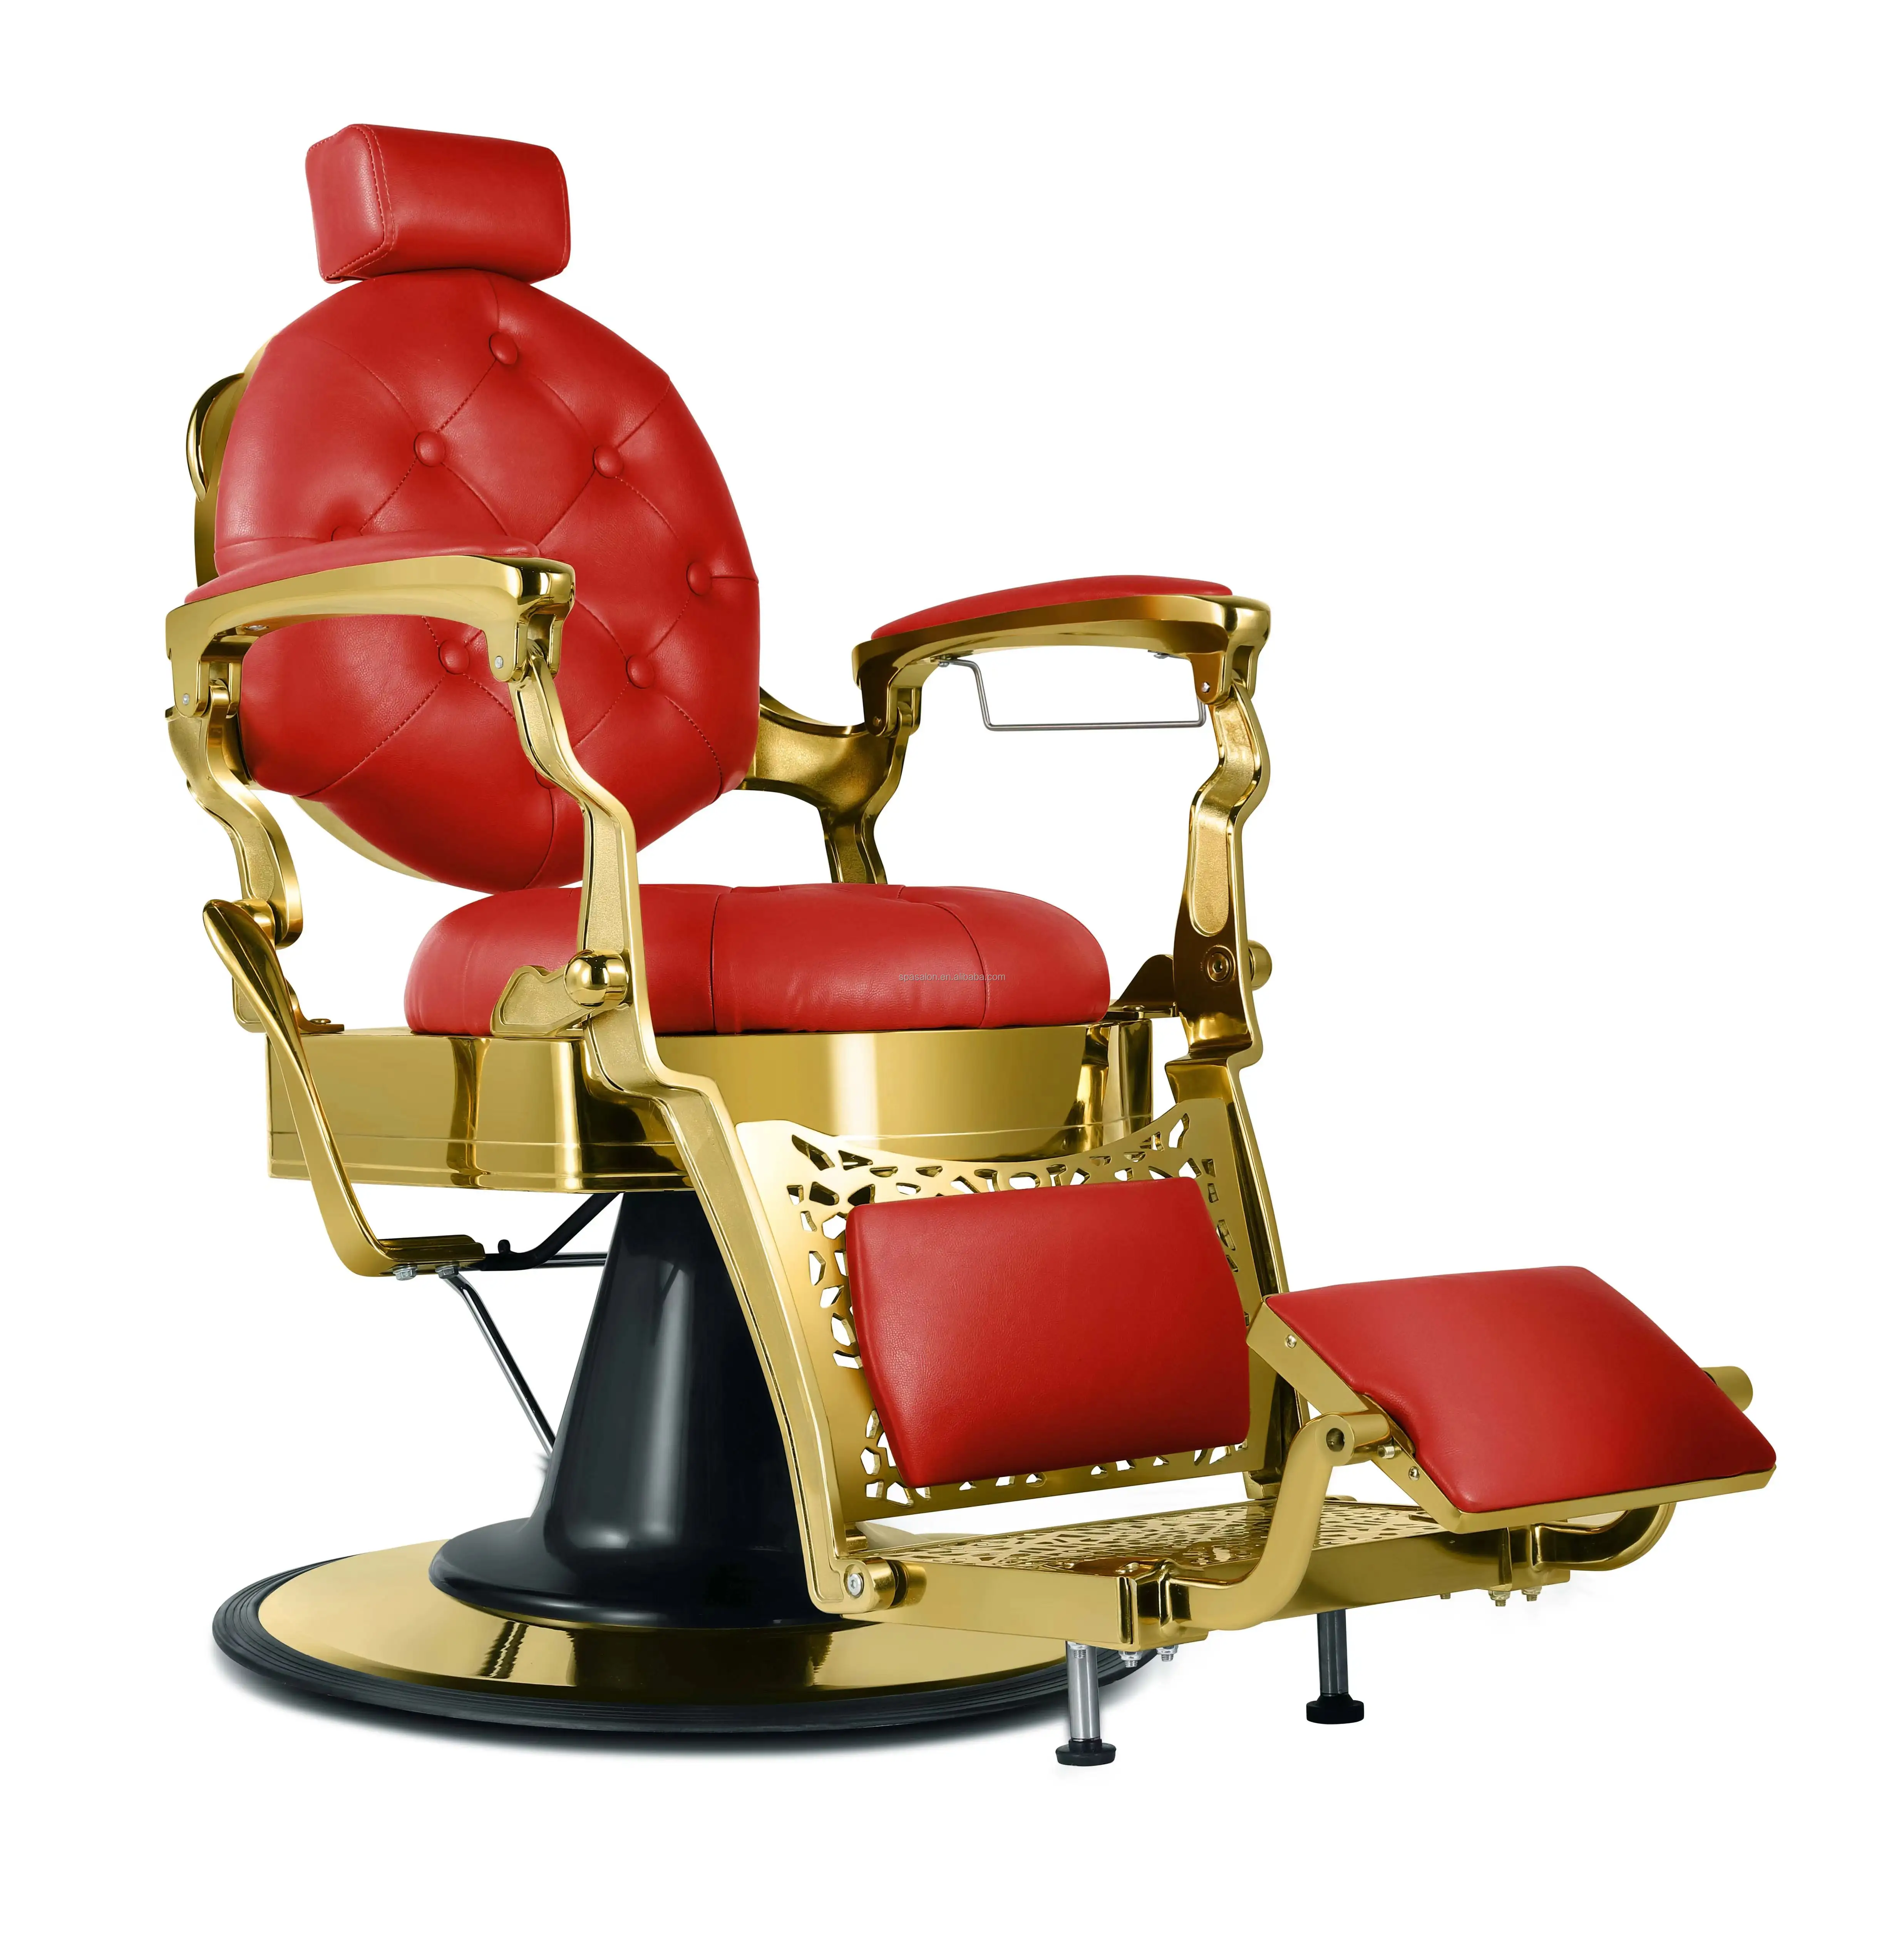 Adjustable barber chair for salon furniture high quality barber chair for barbershop and supplier